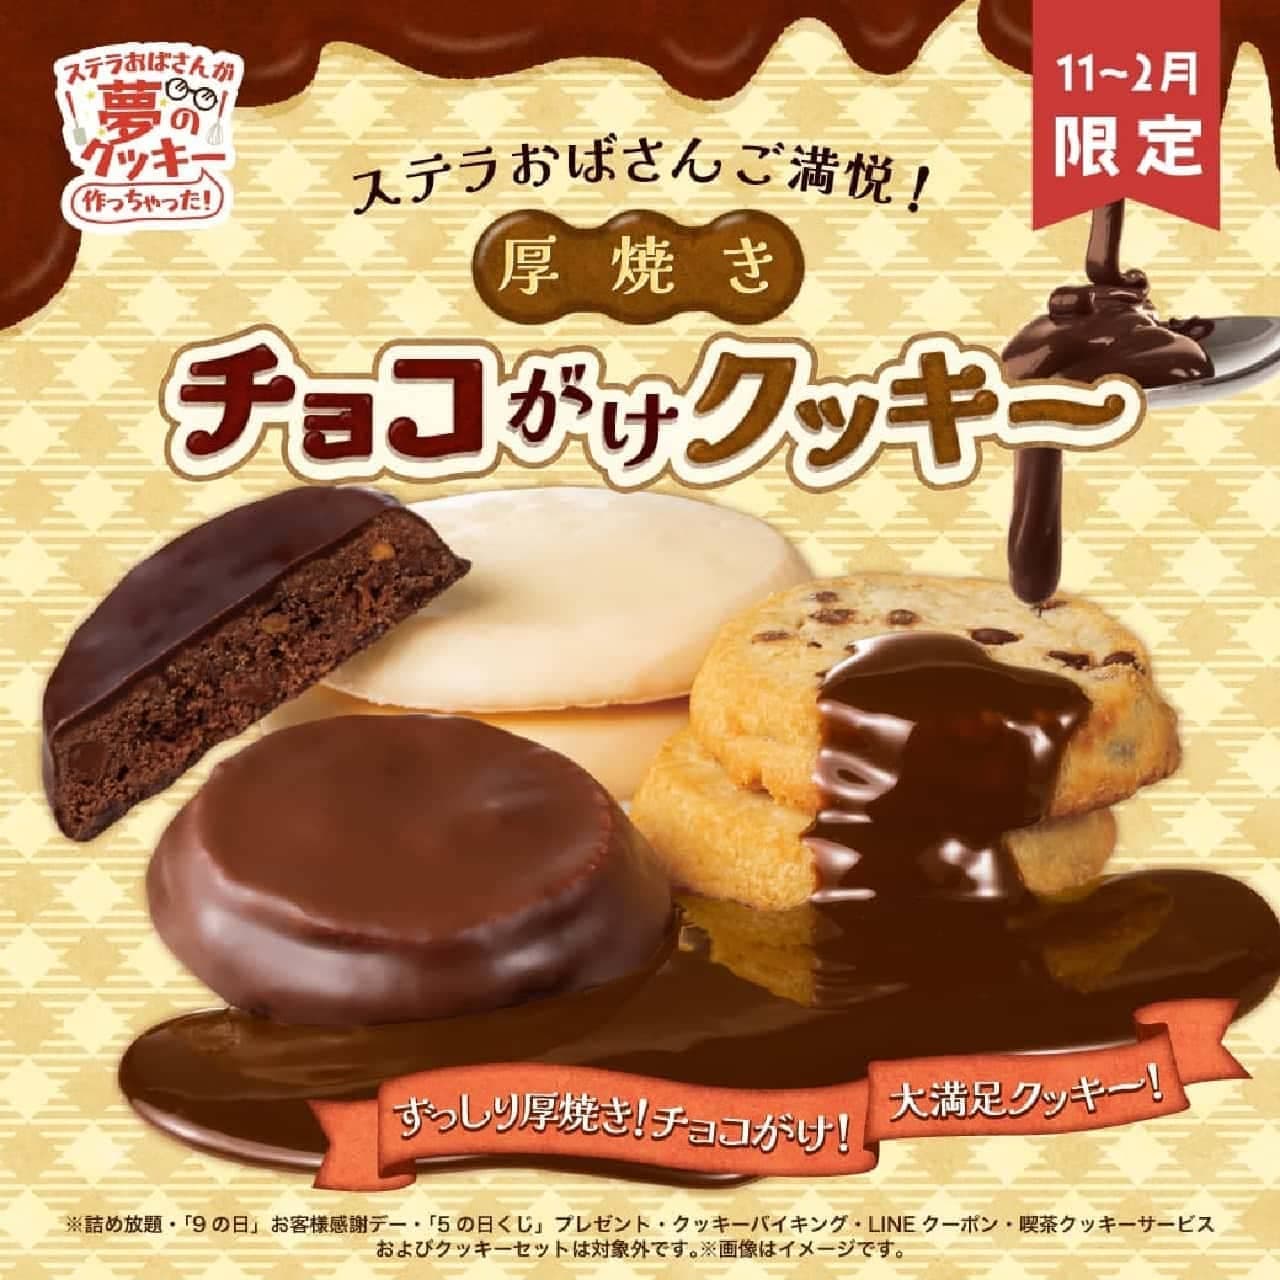 アントステラ「厚焼きチョコがけクッキー」シリーズ3種